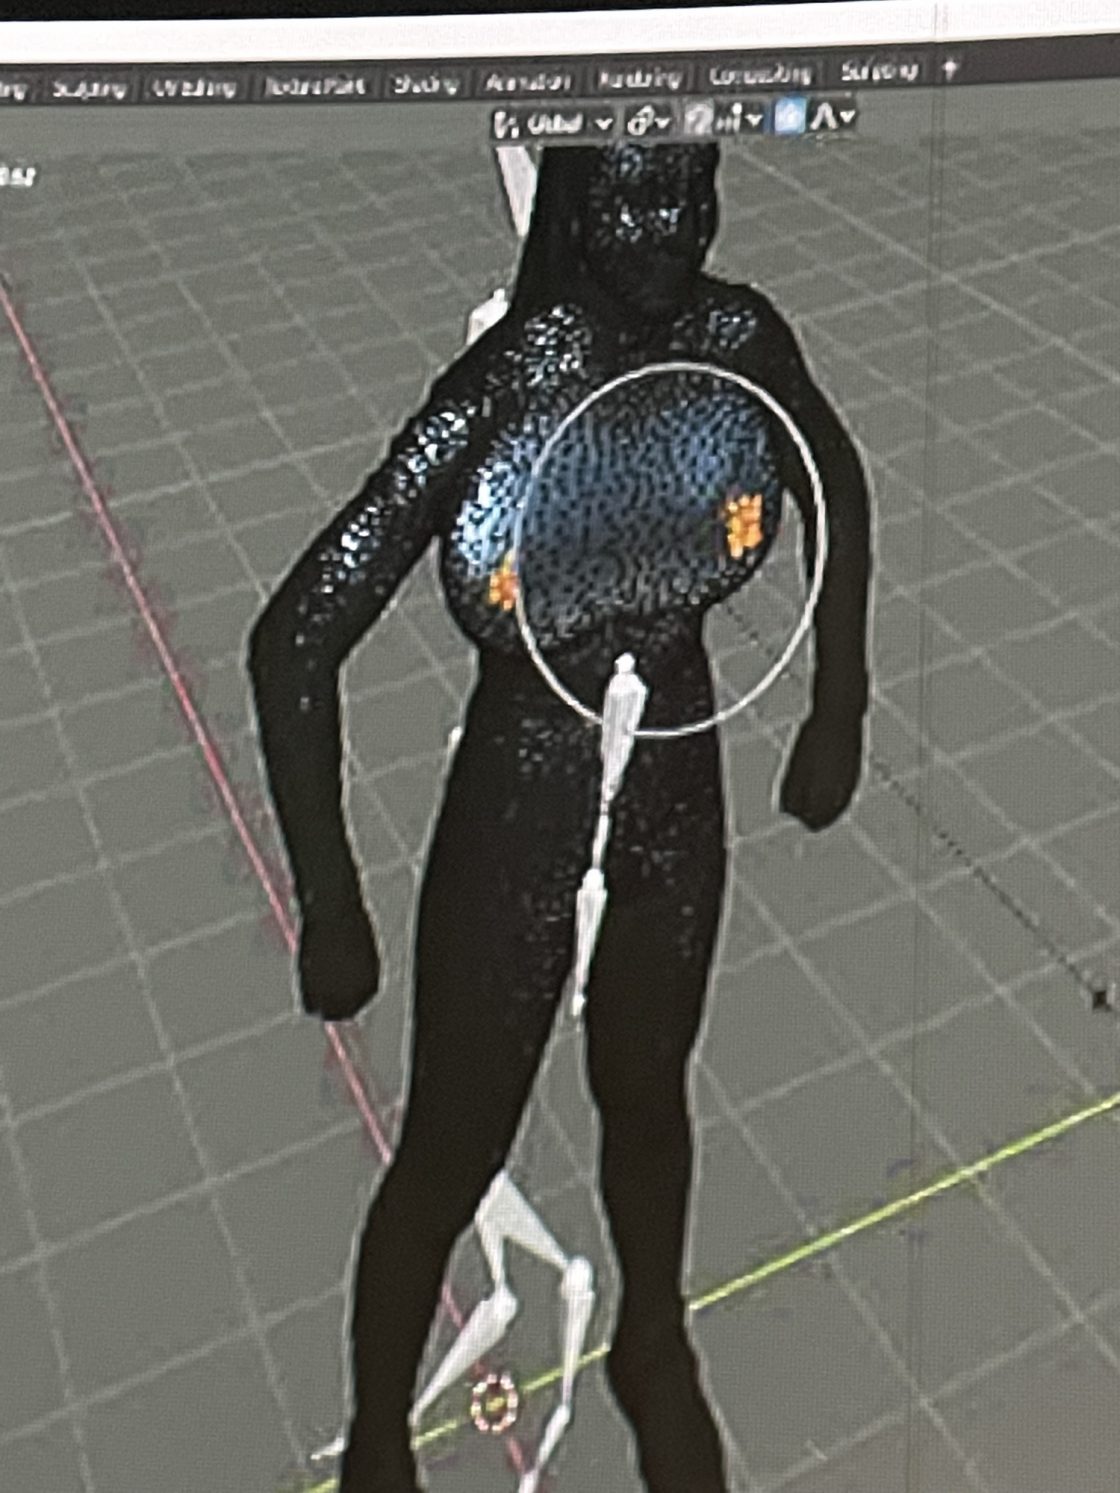 3D model van danser wordt digitaal bewerkt